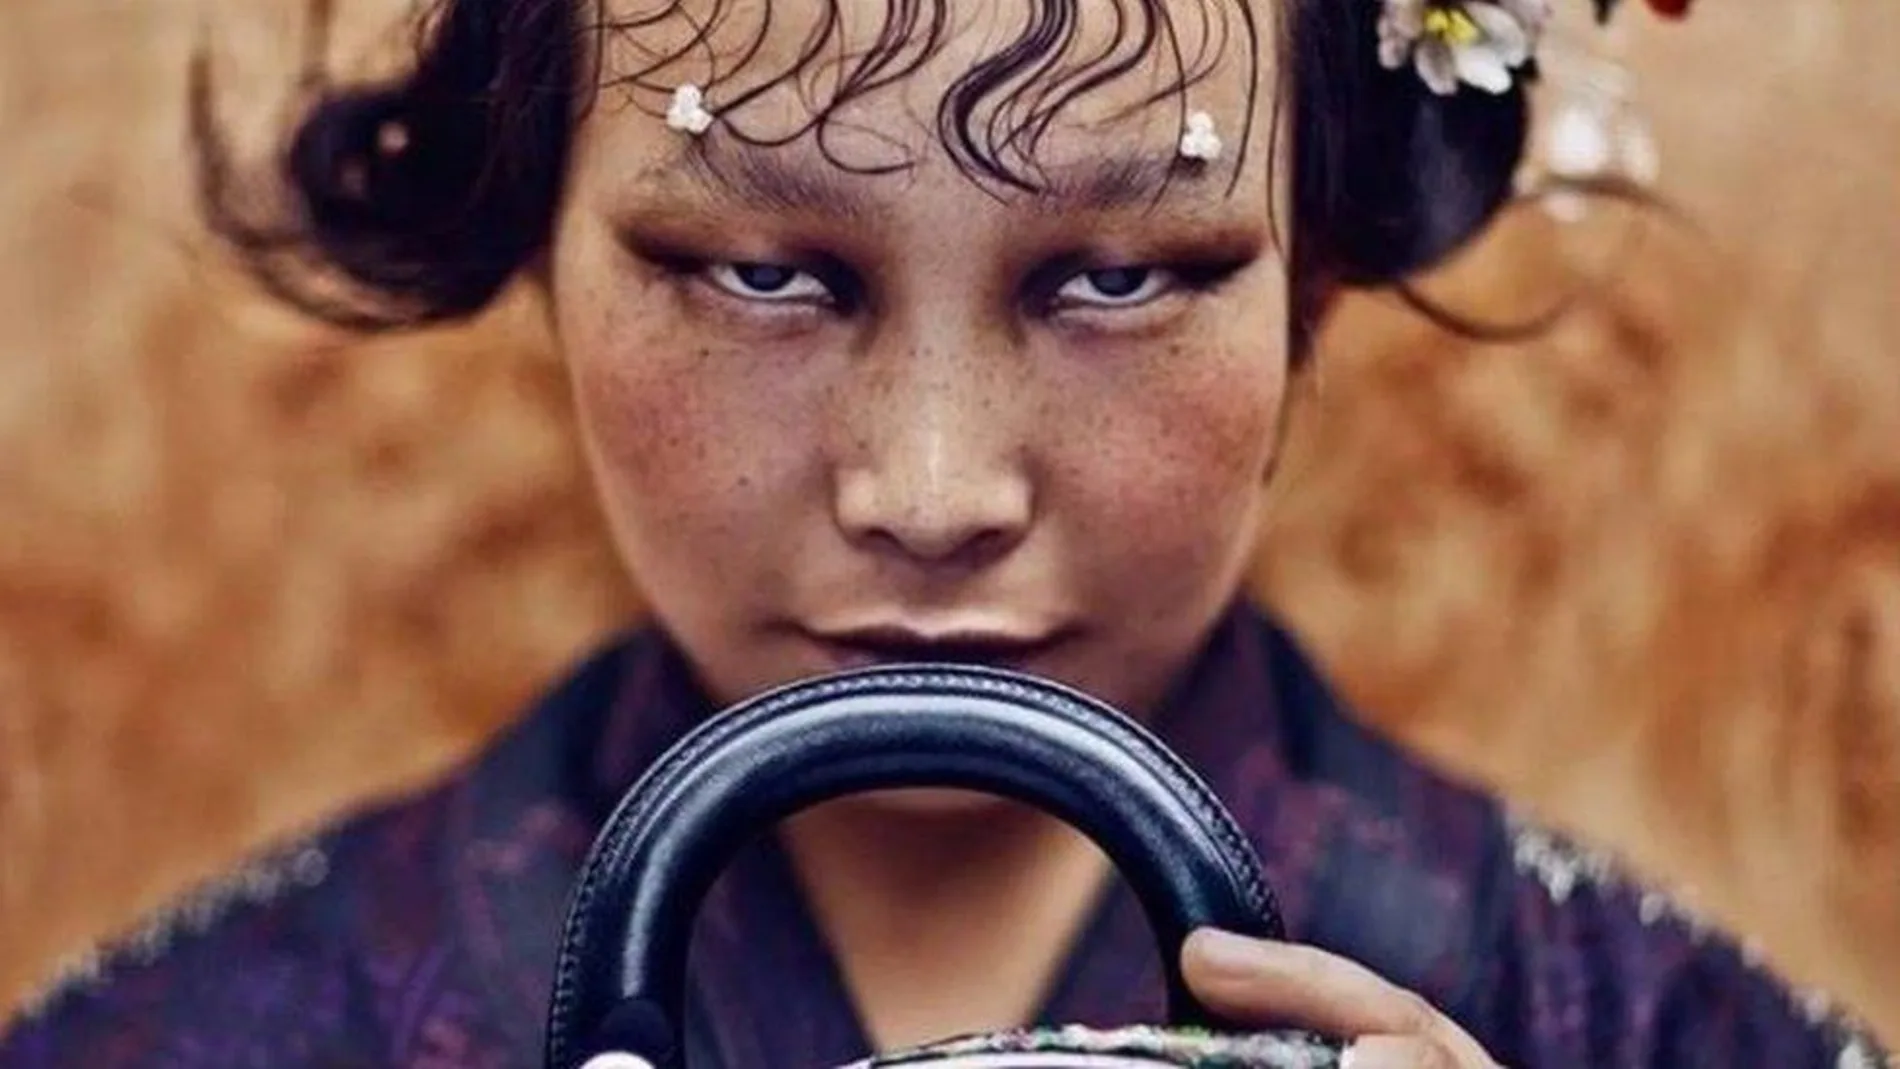 Imagen de la campaña de Chen Man para Dior